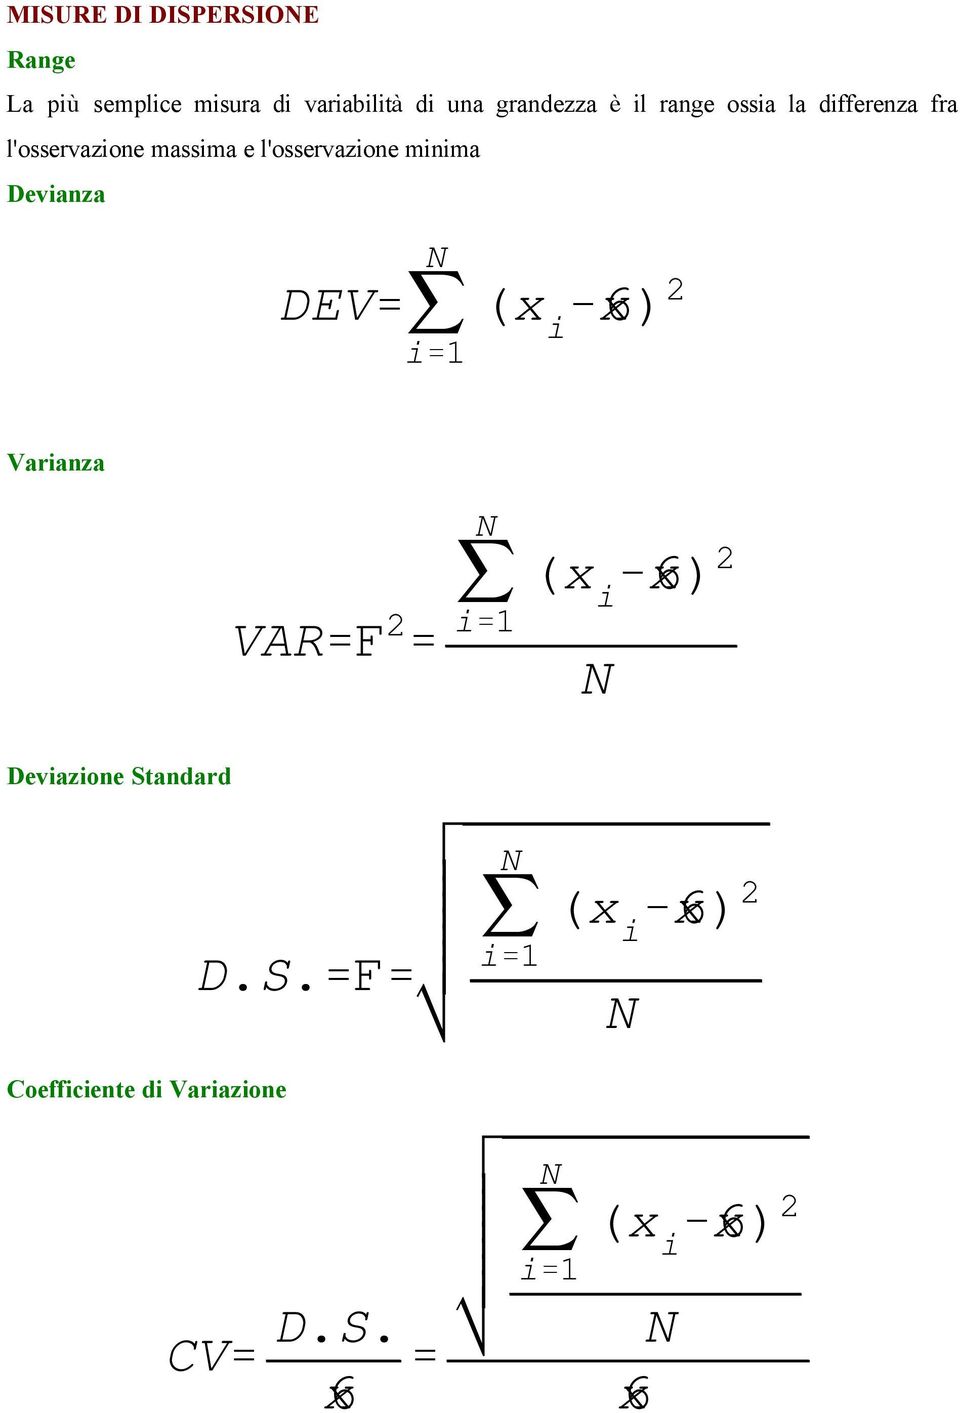 Devianza DEV' j i'1 (x i &6x) 2 Varianza VAR'F 2 ' j i'1 (x i &6x) 2 Deviazione